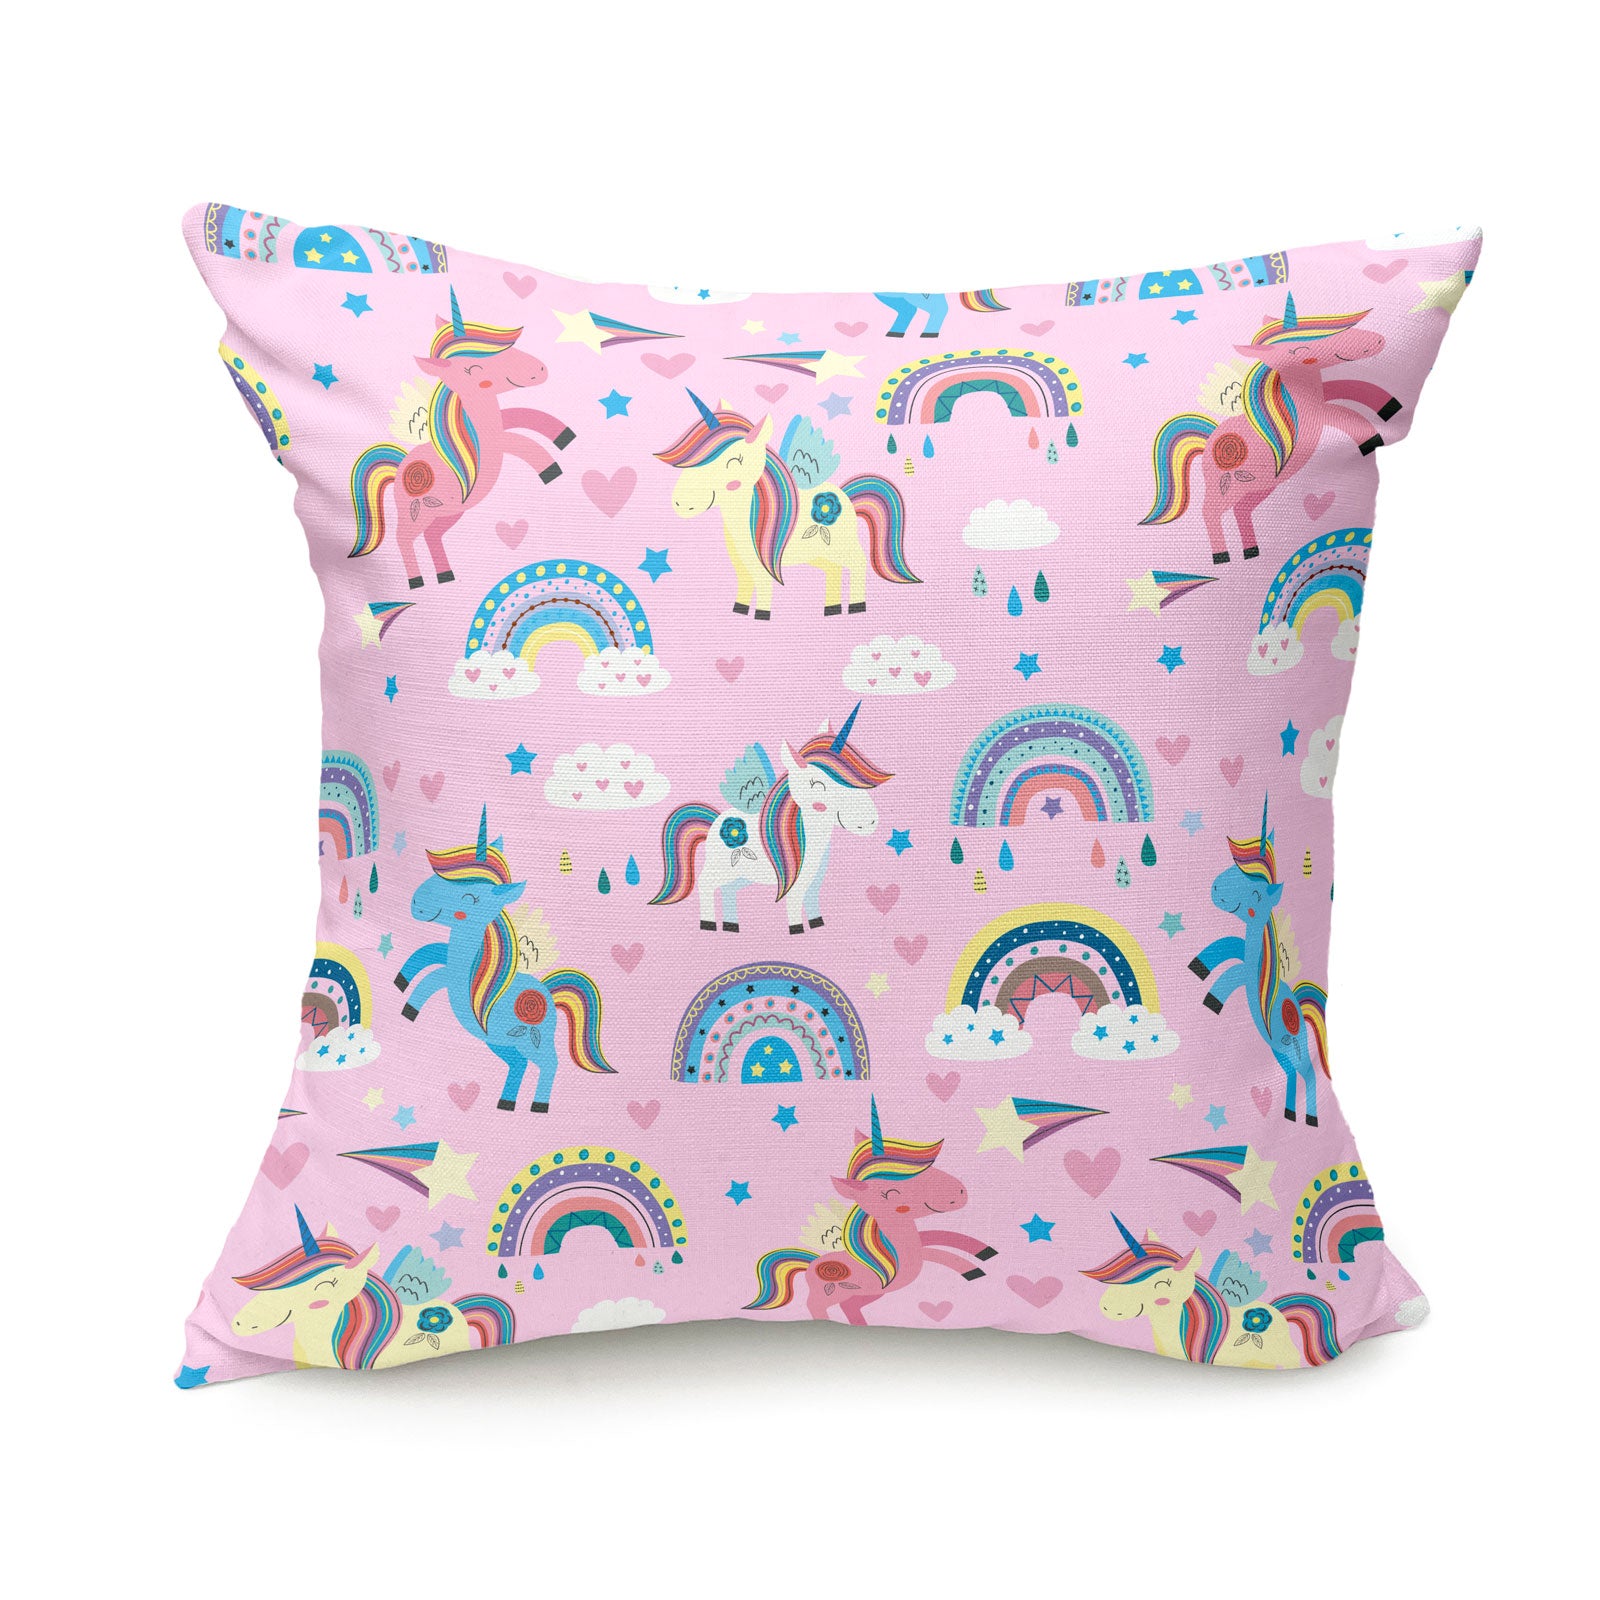 Personalised unicorn cushion for kids